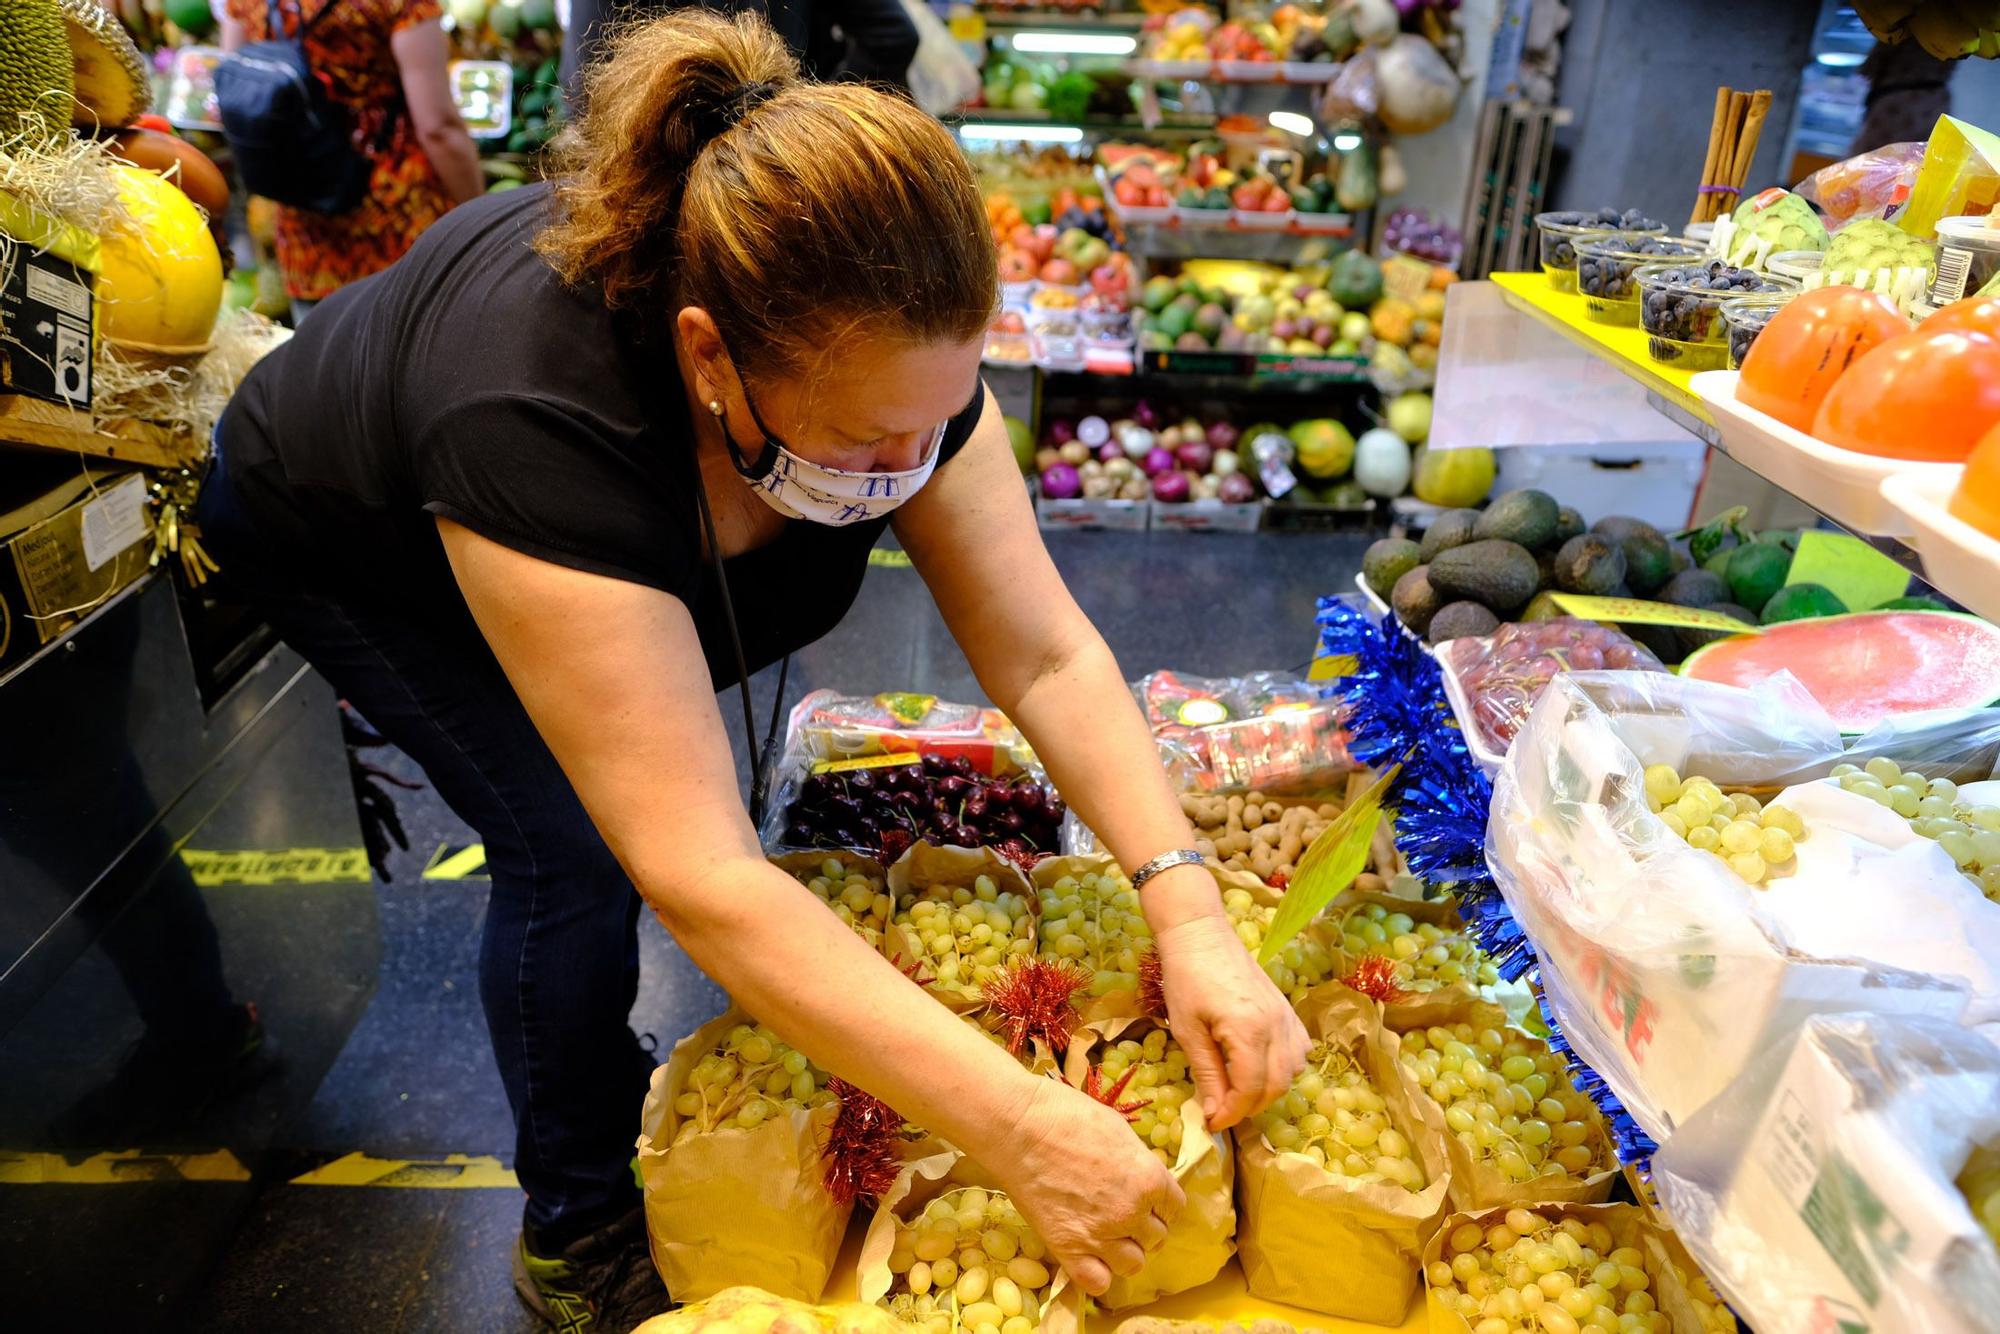 Venta de uvas para fin de año en el Mercado Central